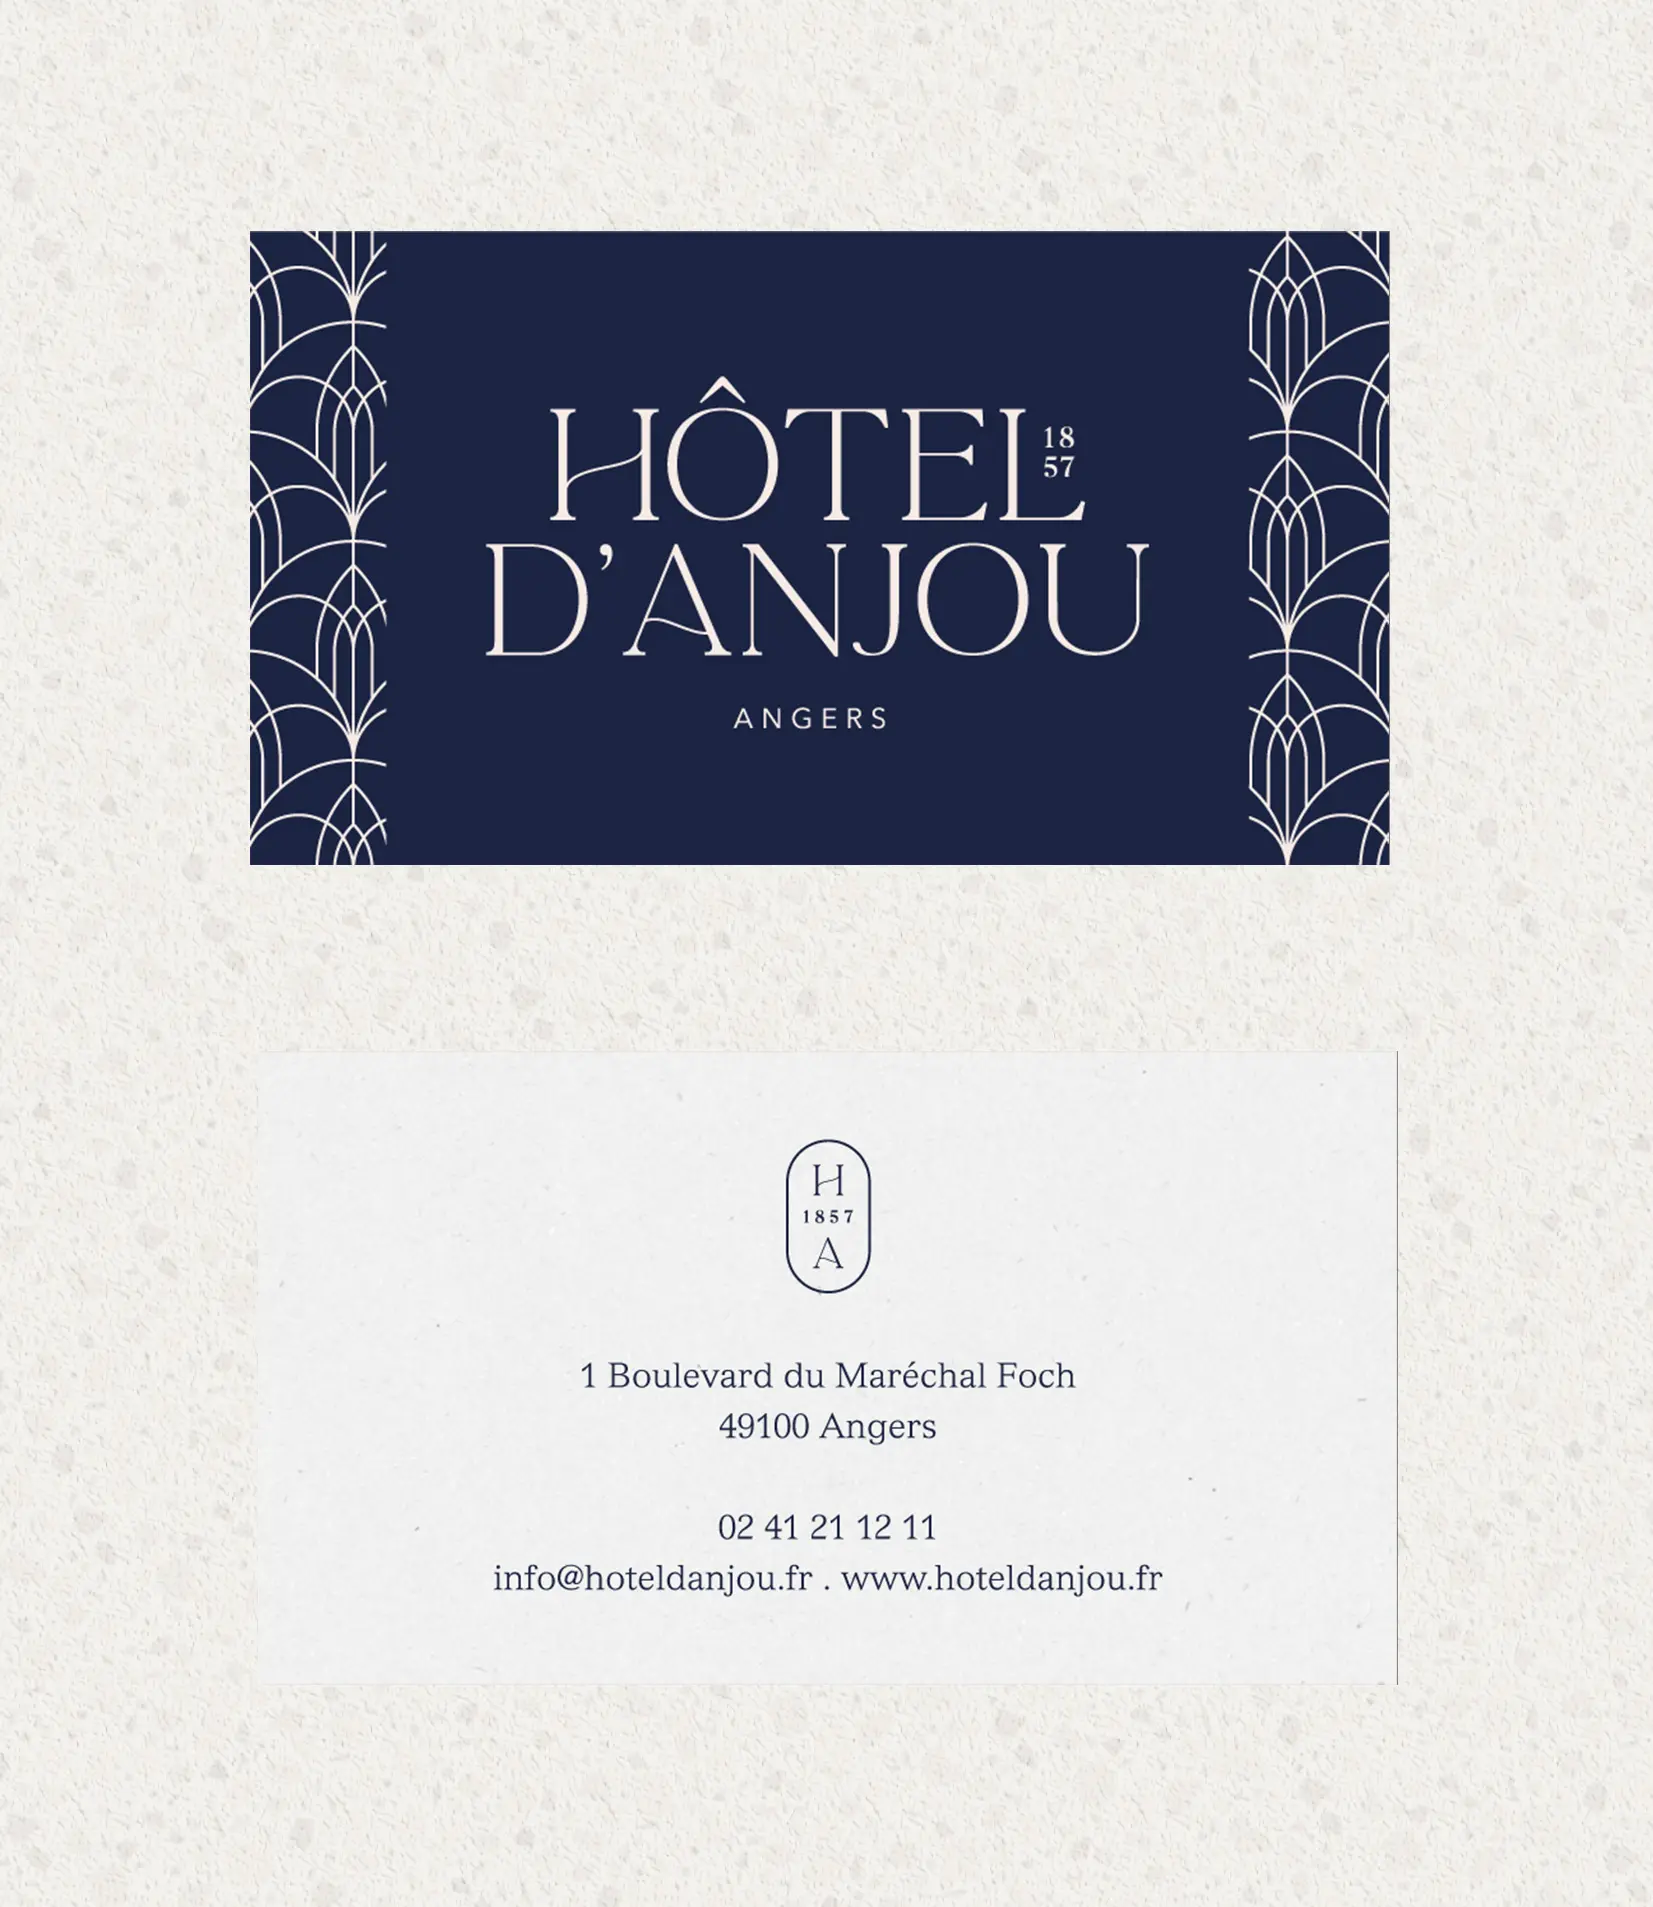 Création d'identité visuelle et logo pour un hôtel historique à Angers